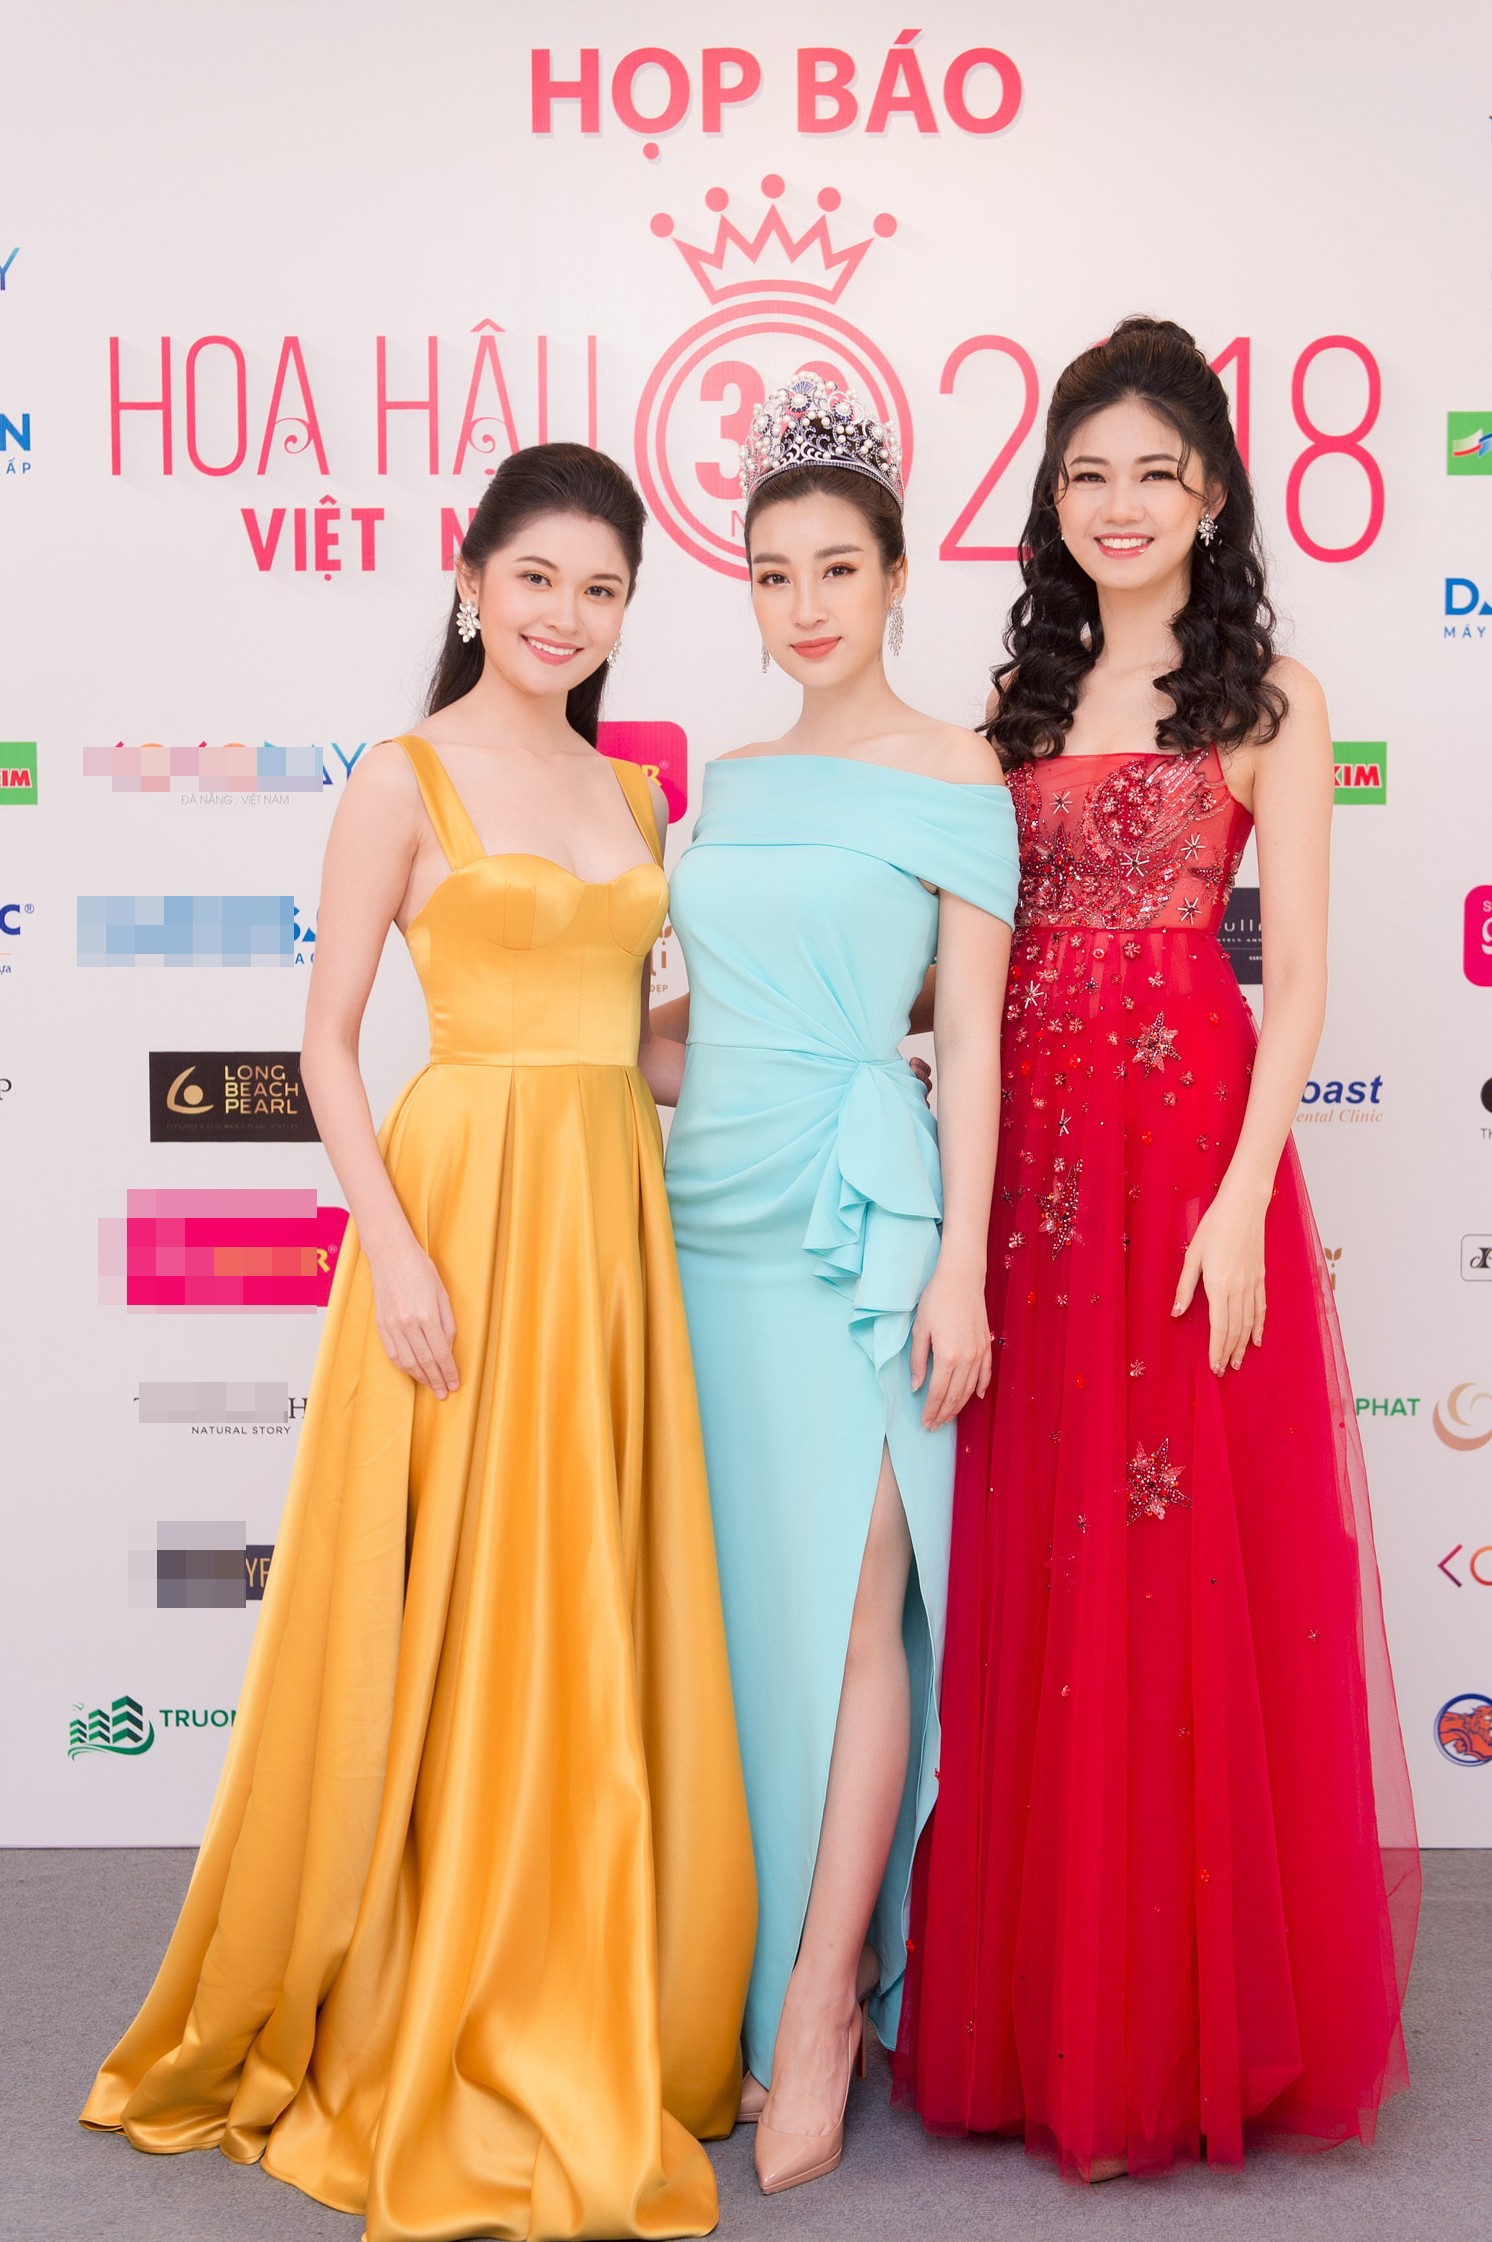 Hoa hậu Việt Nam 2018 mời bác sĩ nha khoa, nhân trắc học nhiều lần tránh để lọt thí sinh phẫu thuật thẩm mỹ - Ảnh 1.